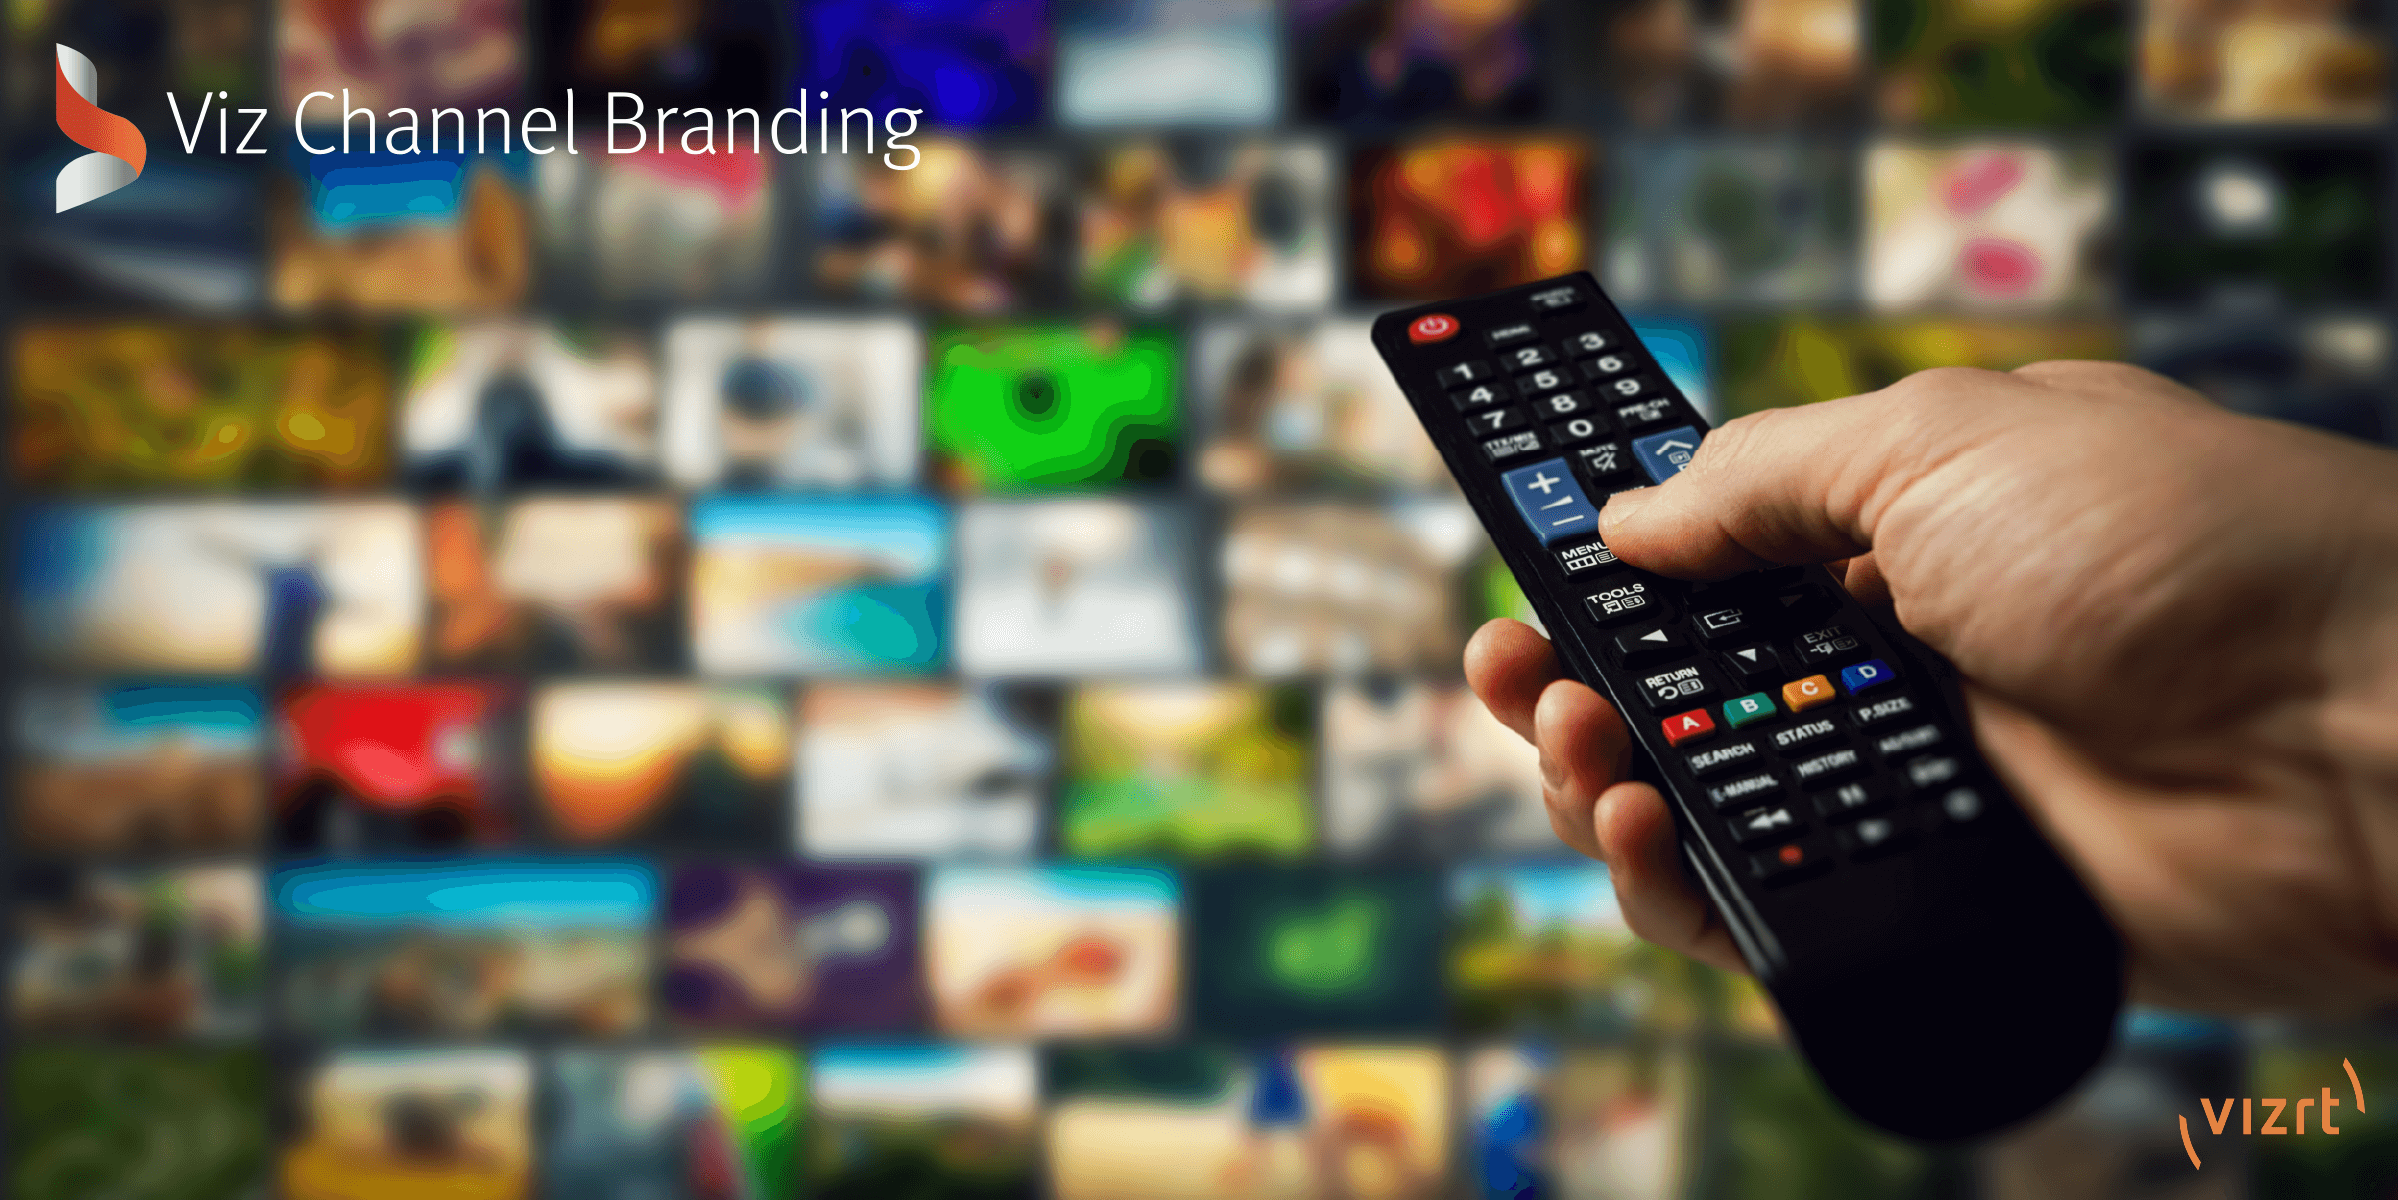 Viz Channel Branding 5.0 - Launch